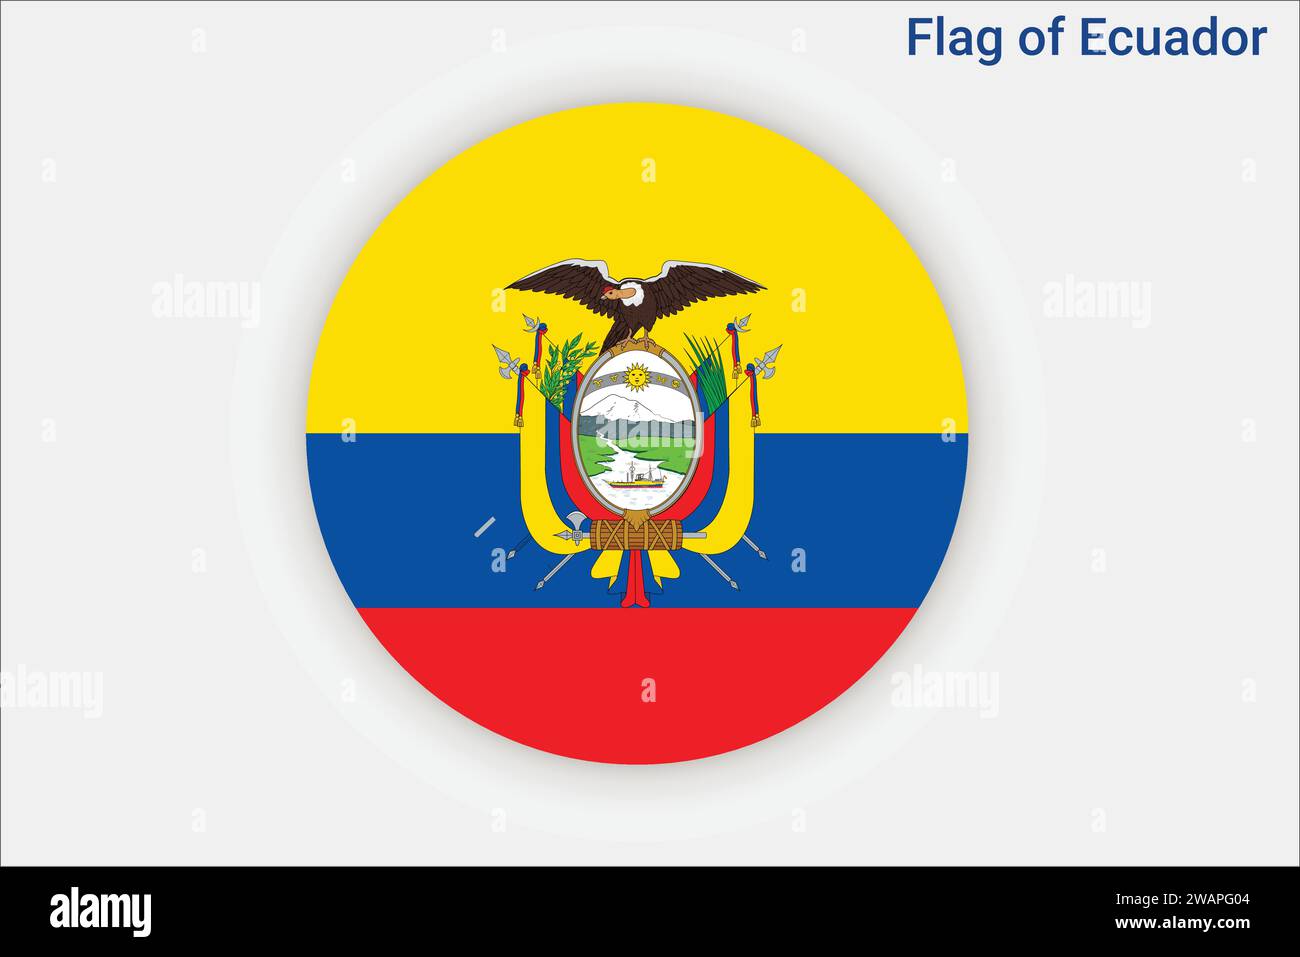 Hohe detaillierte Flagge von Ecuador. Nationale Flagge Ecuadors. Südamerika. 3D-Abbildung. Stock Vektor